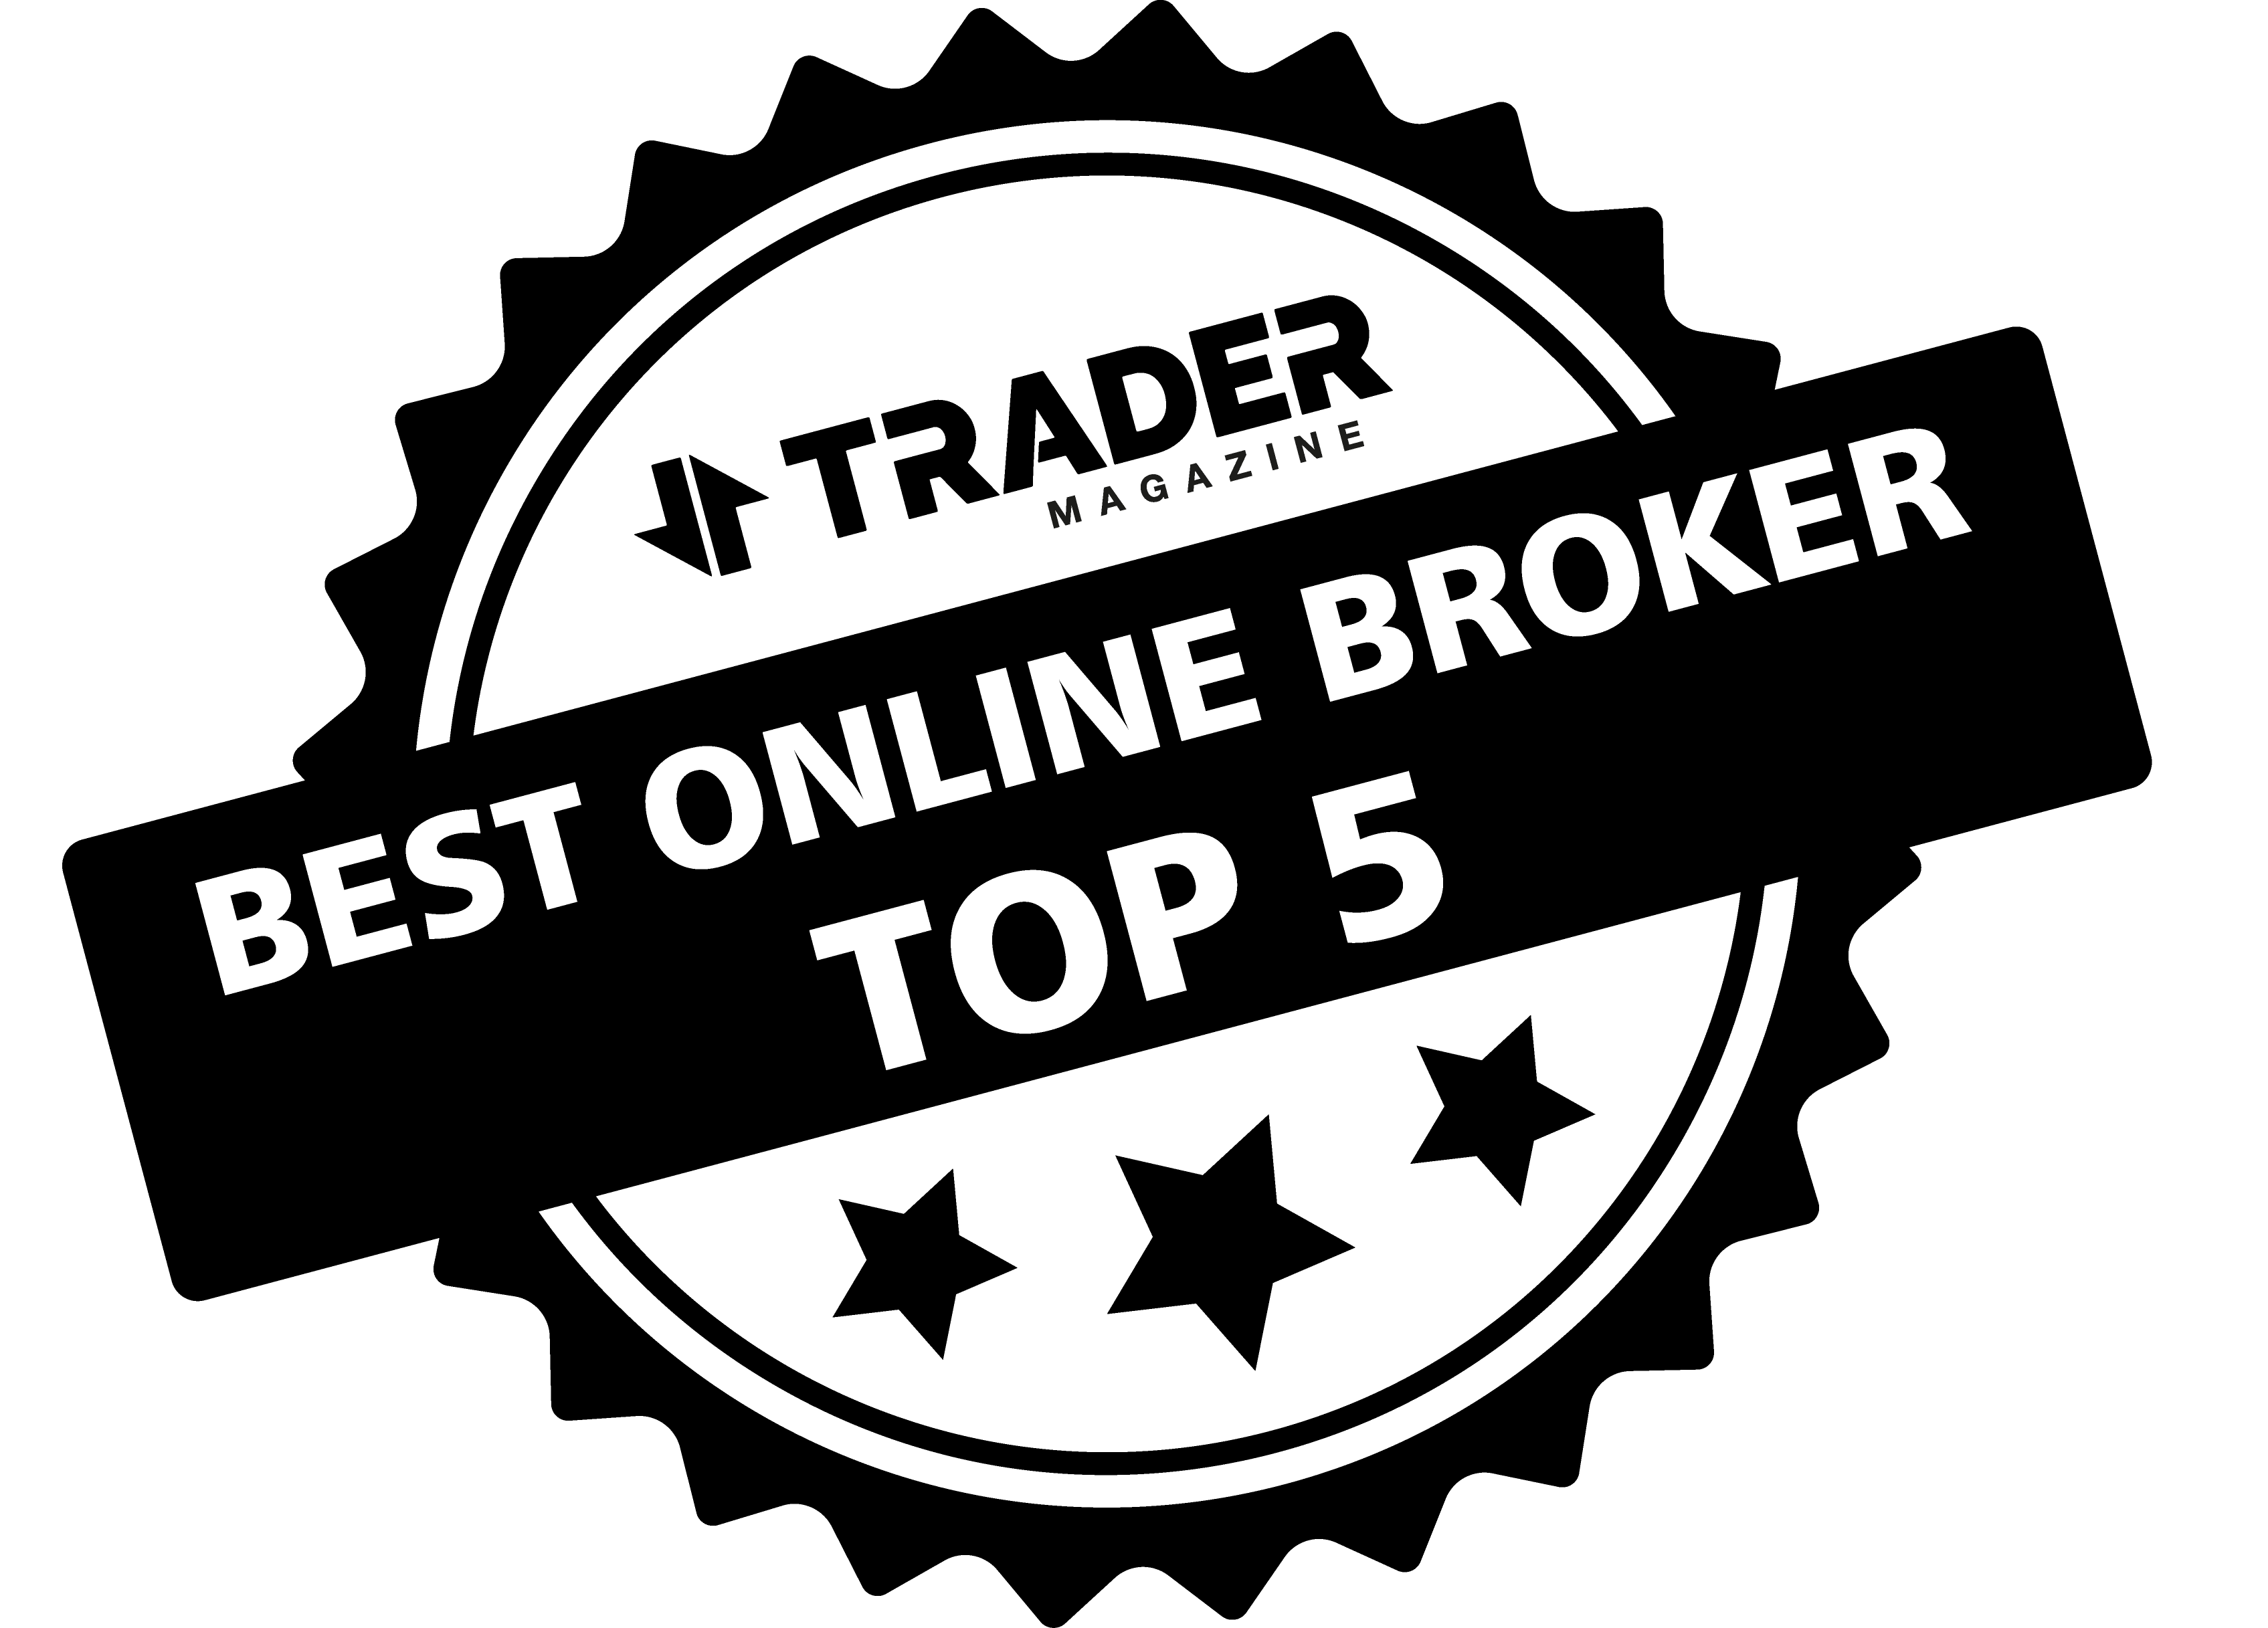 Alpho ranked TOP 5 in the Best Online Broker Chart